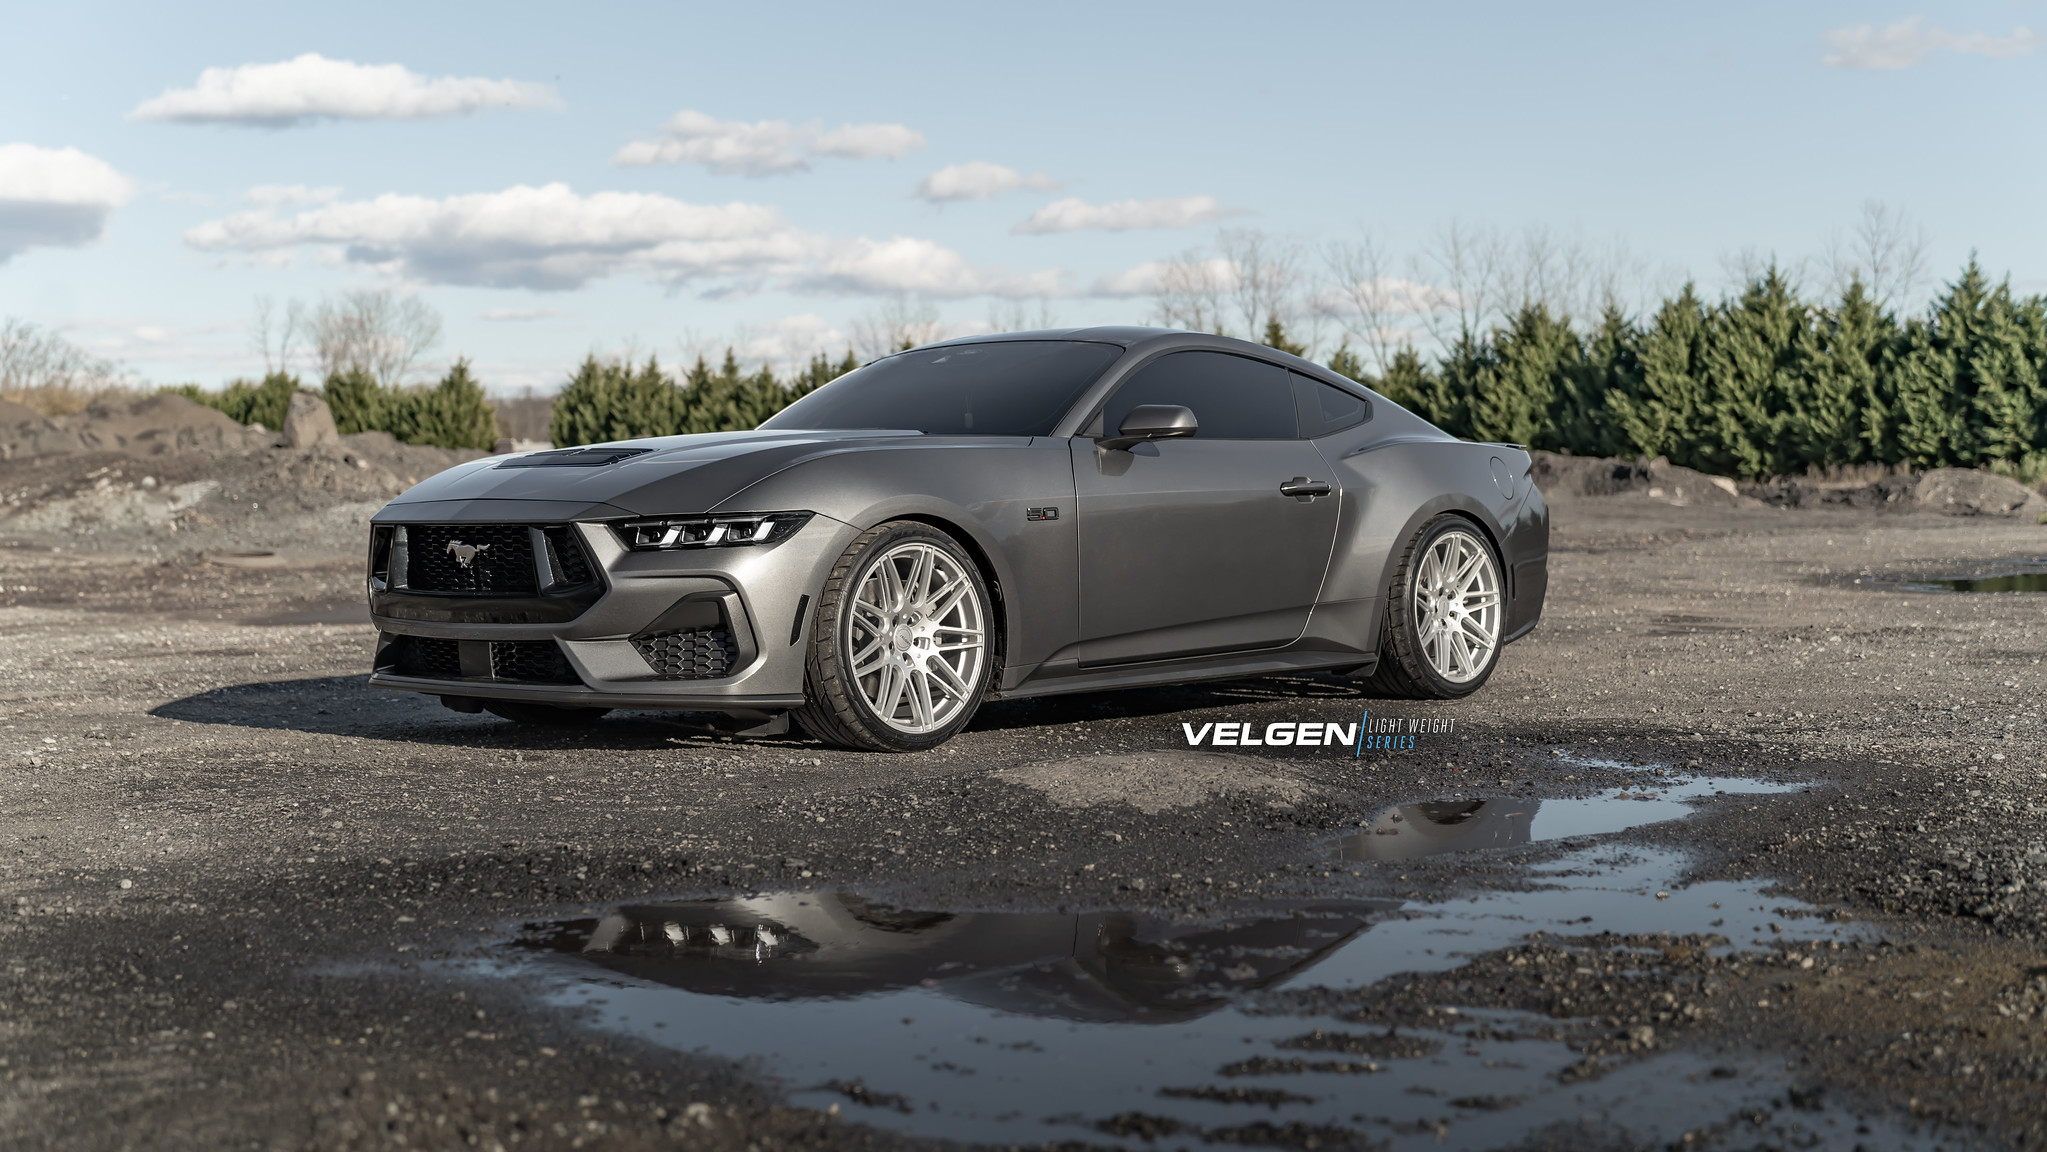 S650 Mustang Velgen wheels for your S650 Mustang | Vibe Motorsports 53529471679_40276bcf33_k